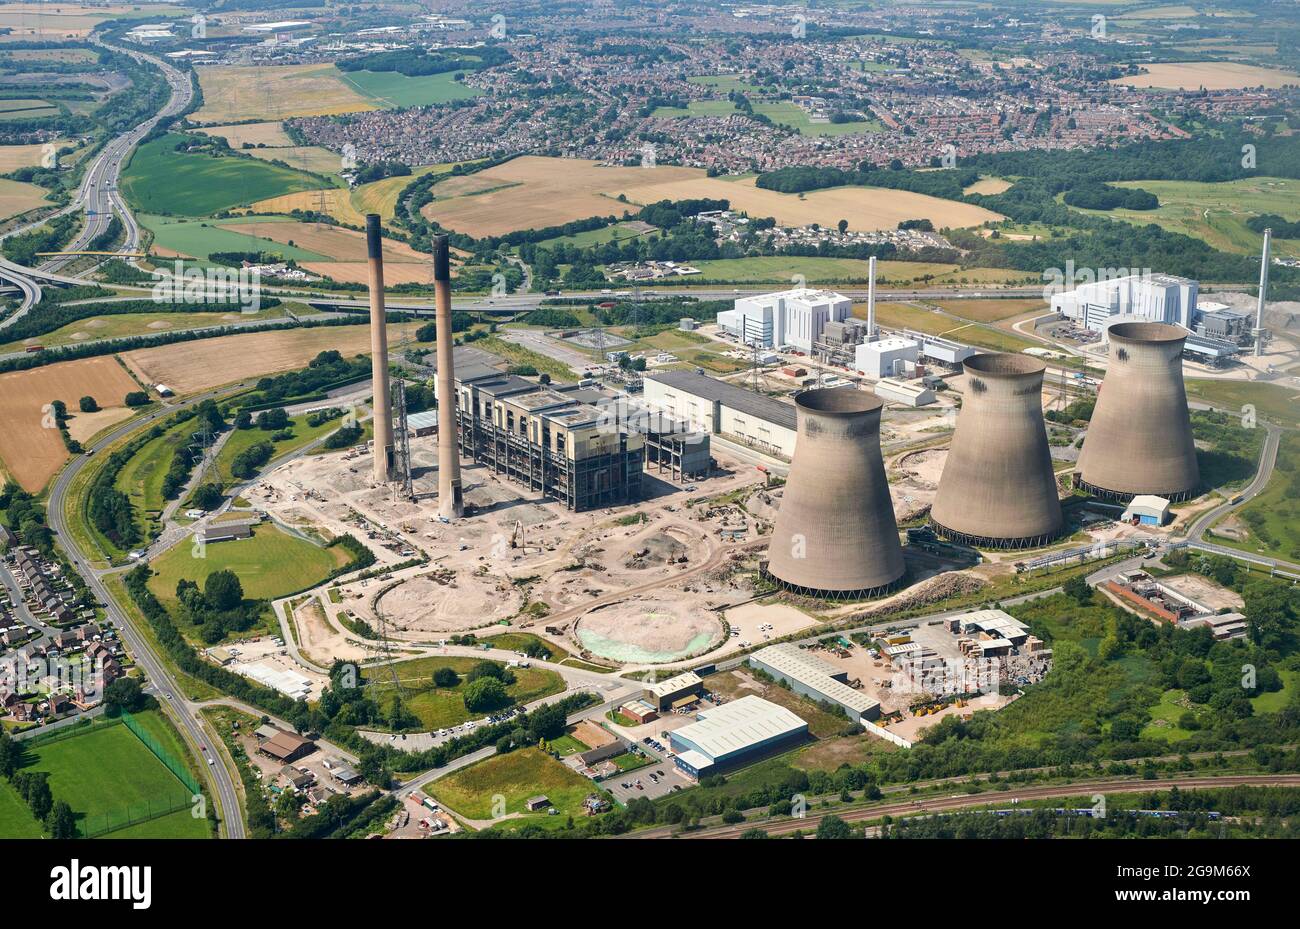 Une vue aérienne de la démolition de la centrale électrique, Ferrybridge, West Yorkshire, nord de l'Angleterre, Royaume-Uni, 3 tours de refroidissement ont disparu Banque D'Images